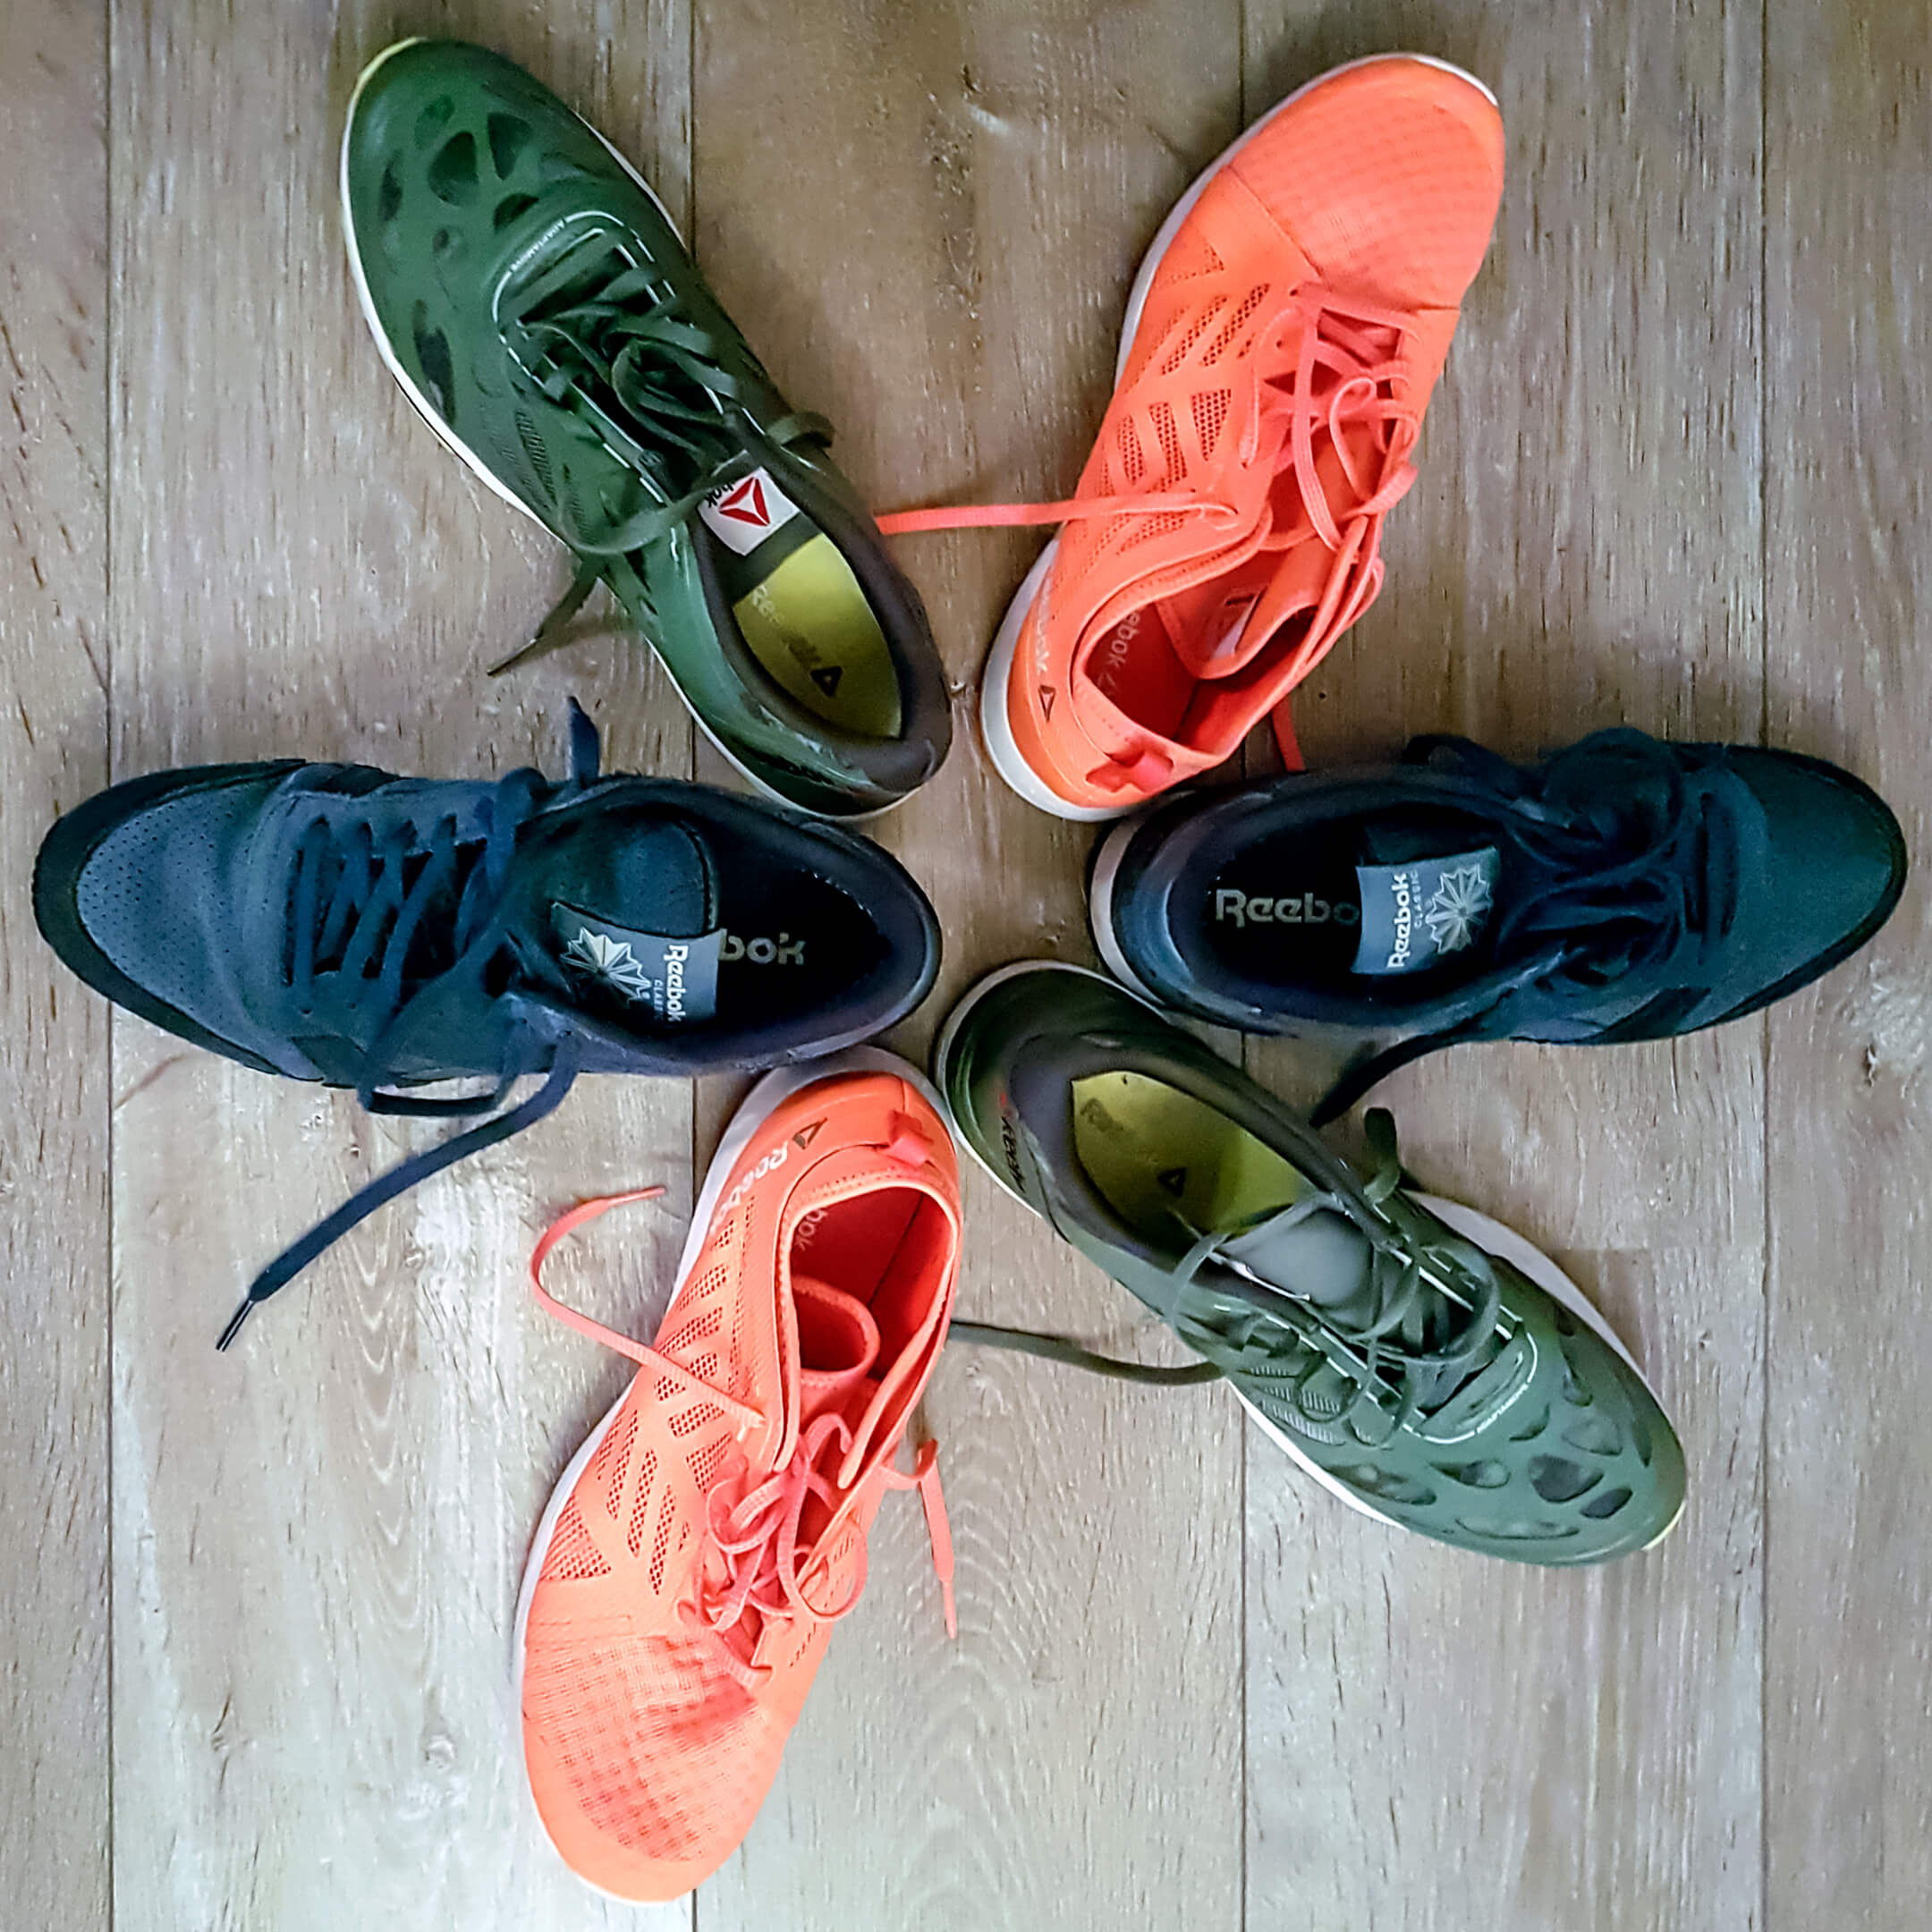 Foto van 6 sportschoenen van het merk Reebok. Op de foto zijn de schoenen in een stervorm geplaatst met de neuzen van de schoenen naar buiten. De Reeboks zijn roze, groen en blauw. De foto hoort bij het gedicht Lijf.